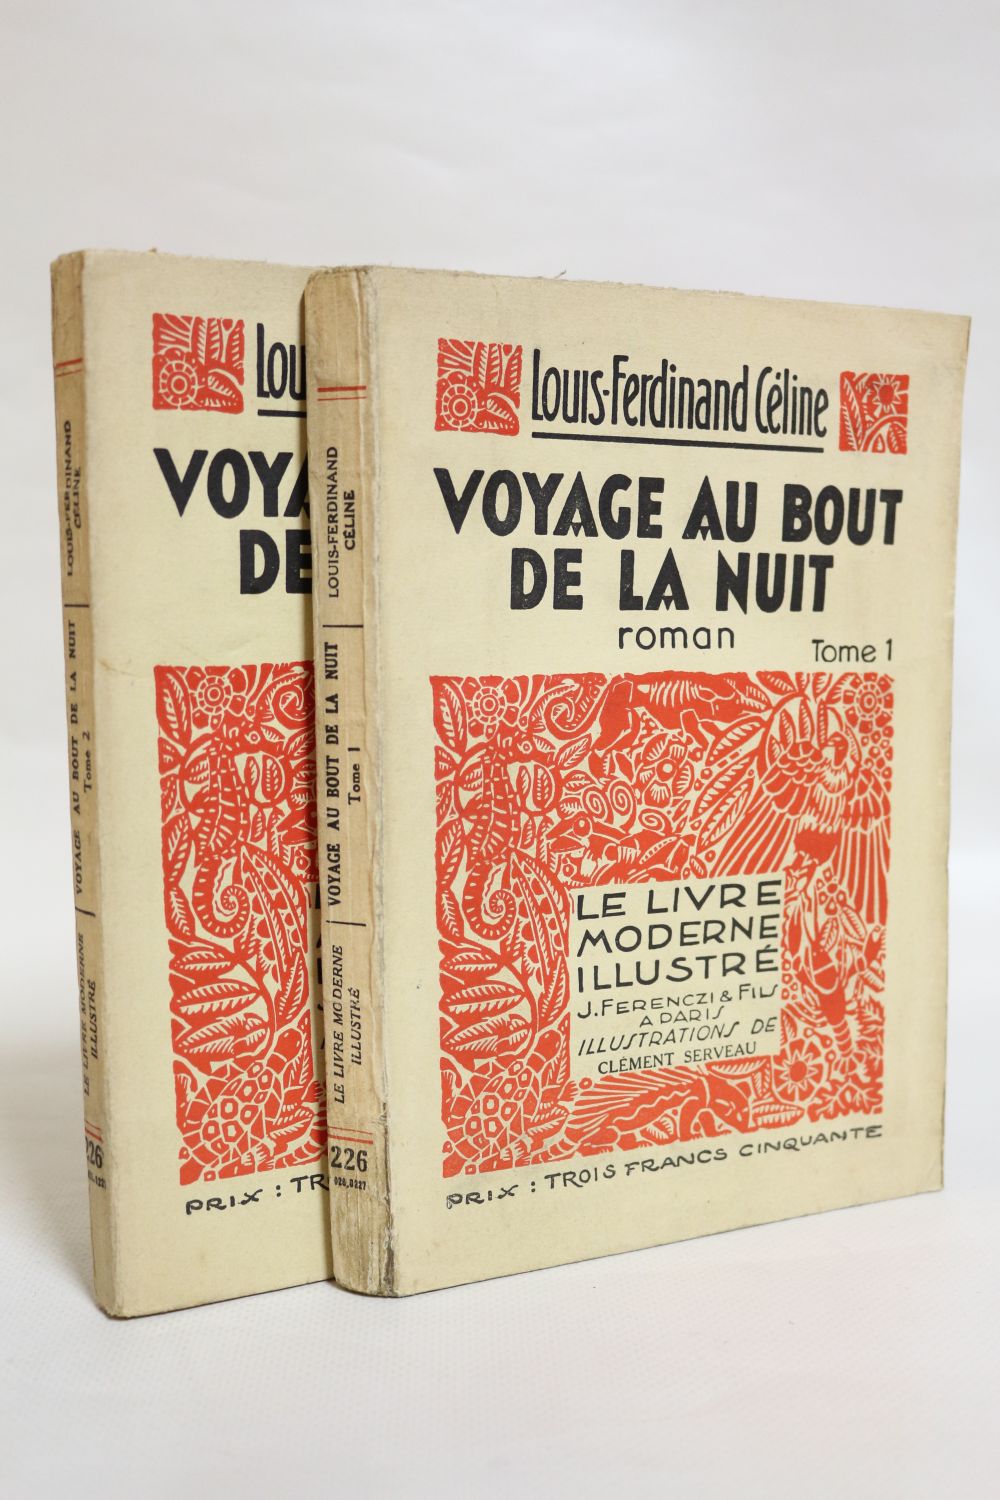 Voyage Au Bout De La Nuit - Littérature